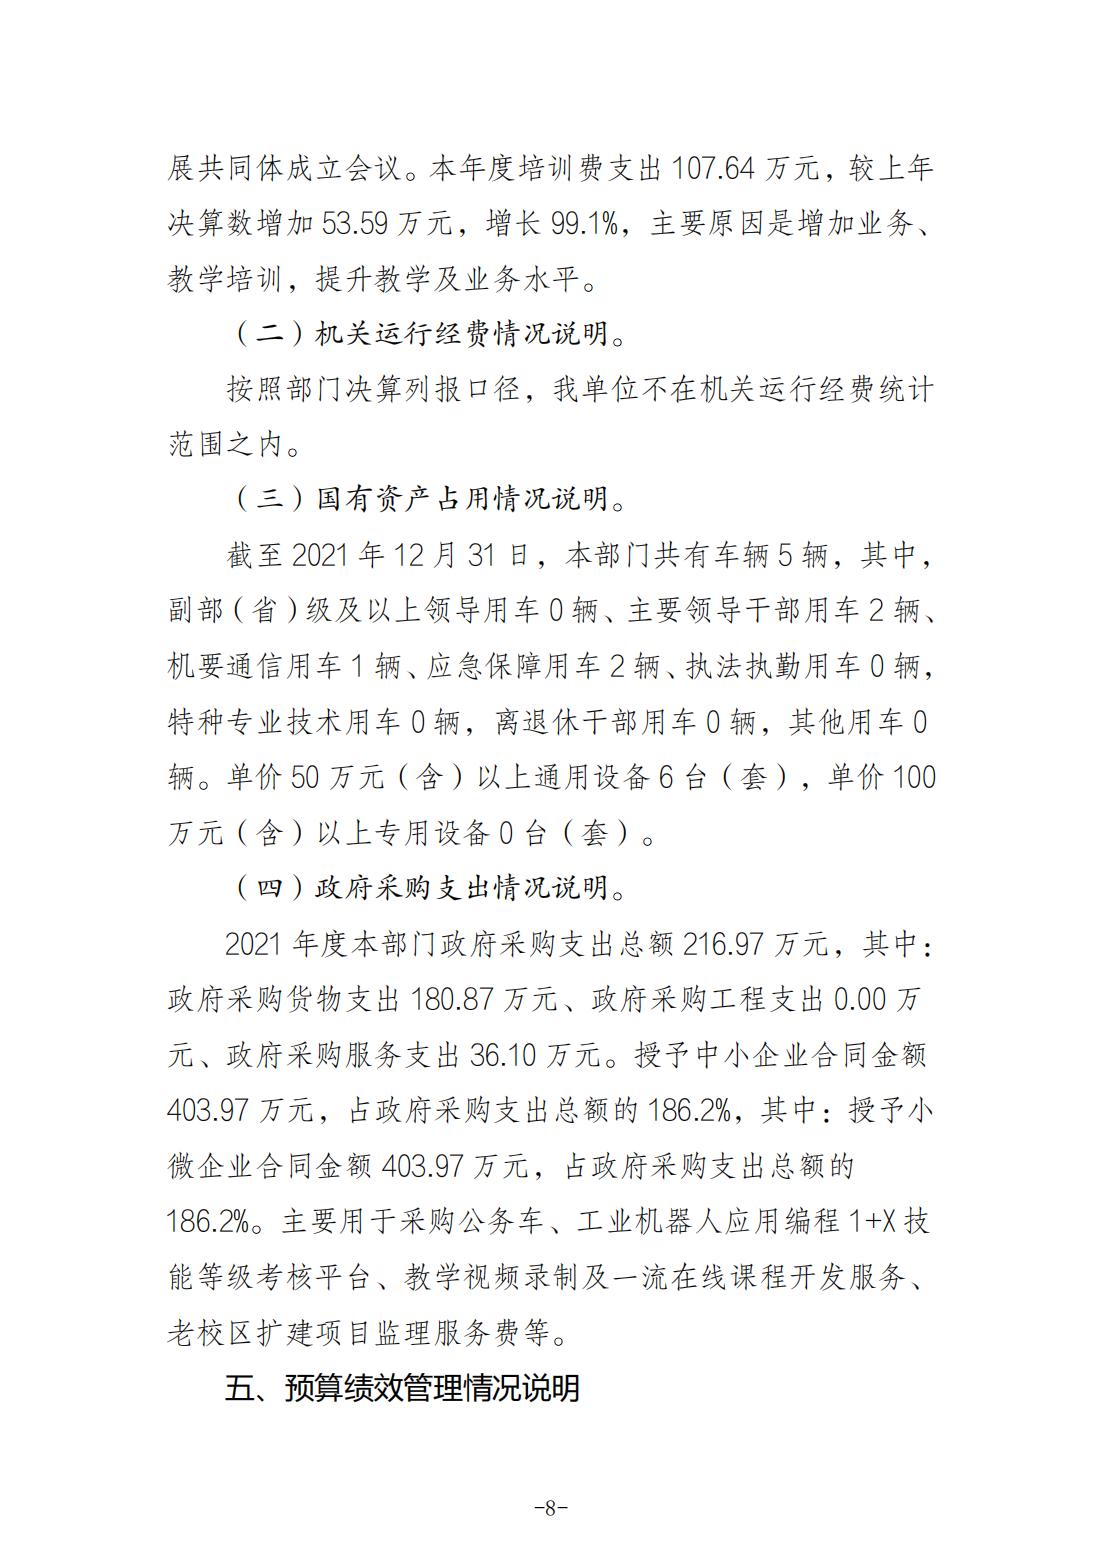 重庆城市职业学院2021年度部门决算情况说明_07.jpg